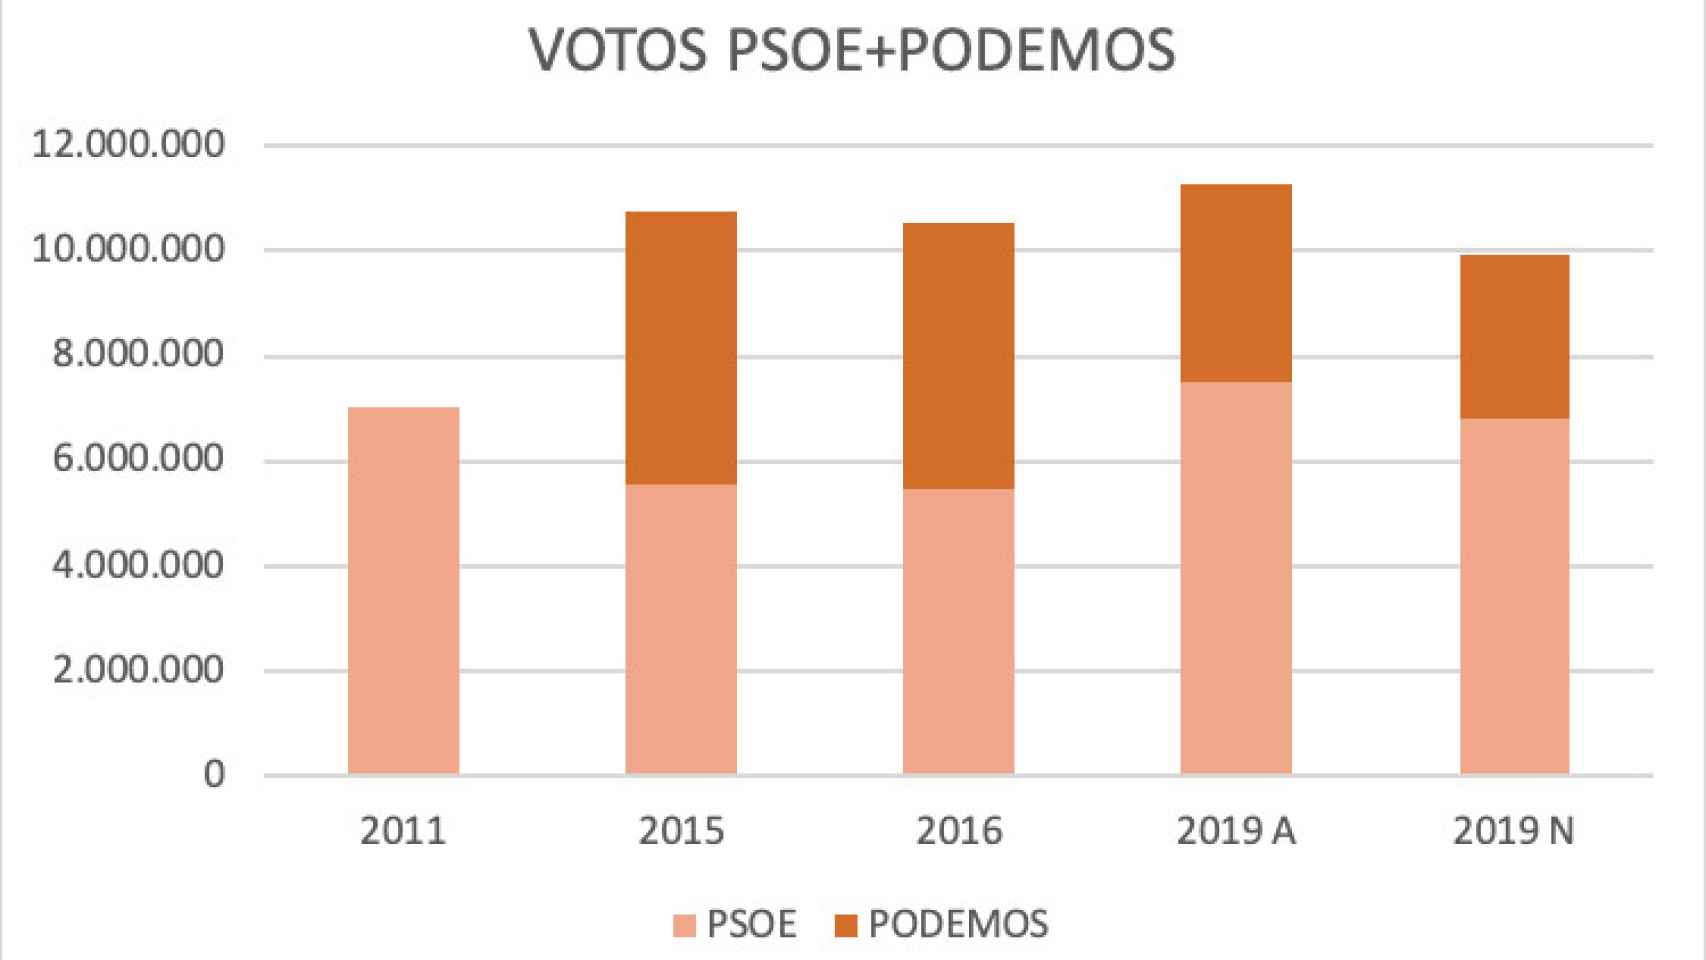 Votos PSOE + Podemos entre 2011 y 2019.